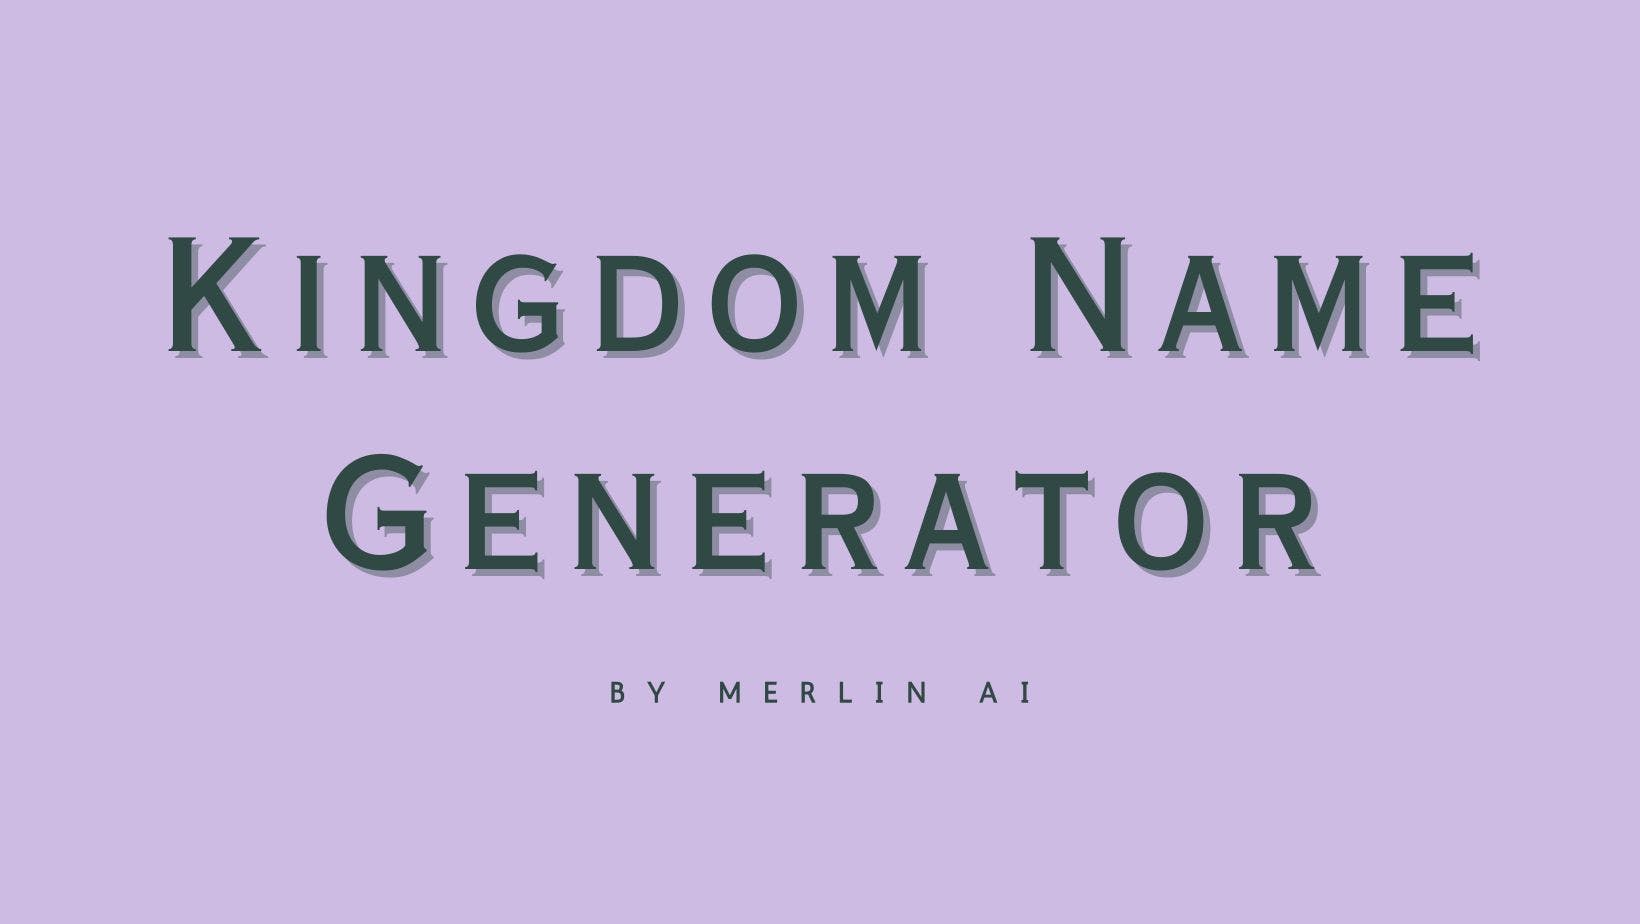 Cover Image for Generador gratuito de nombres de reinos de Merlin AI